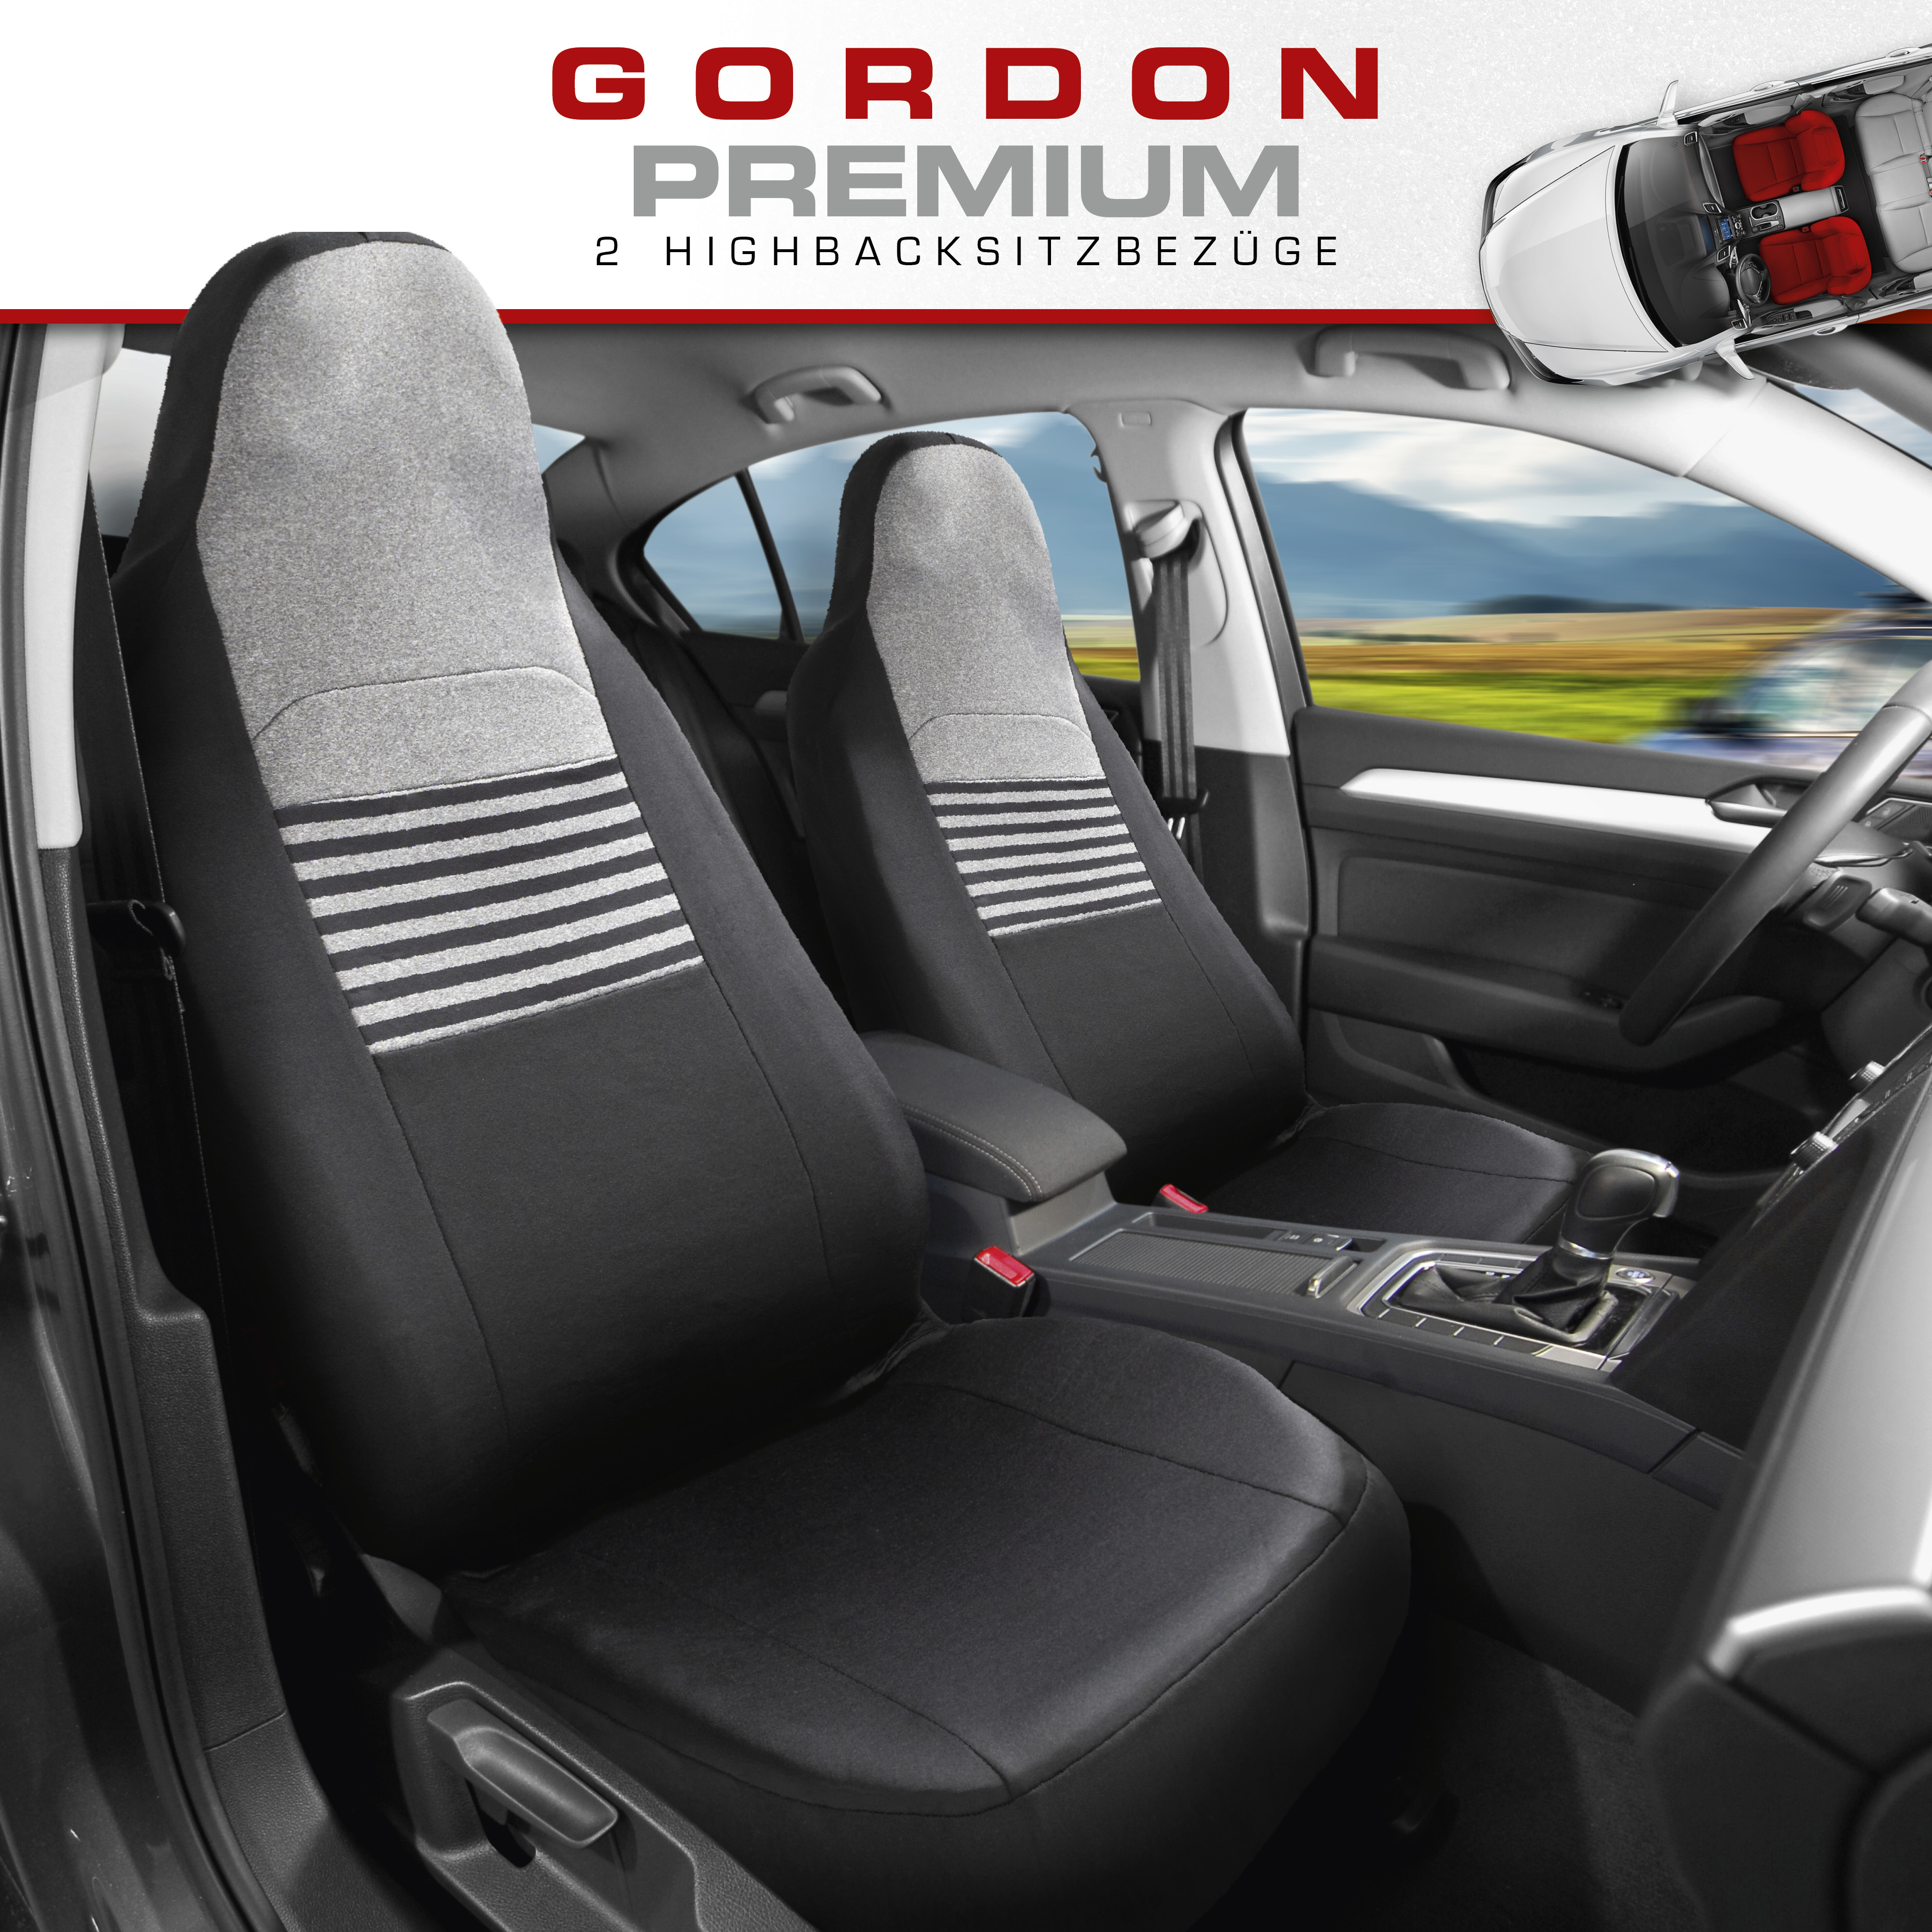 Autositzbezug Gordon für zwei Vordersitze, Autozubehör-Konfigurator, PKW  & Motorrad